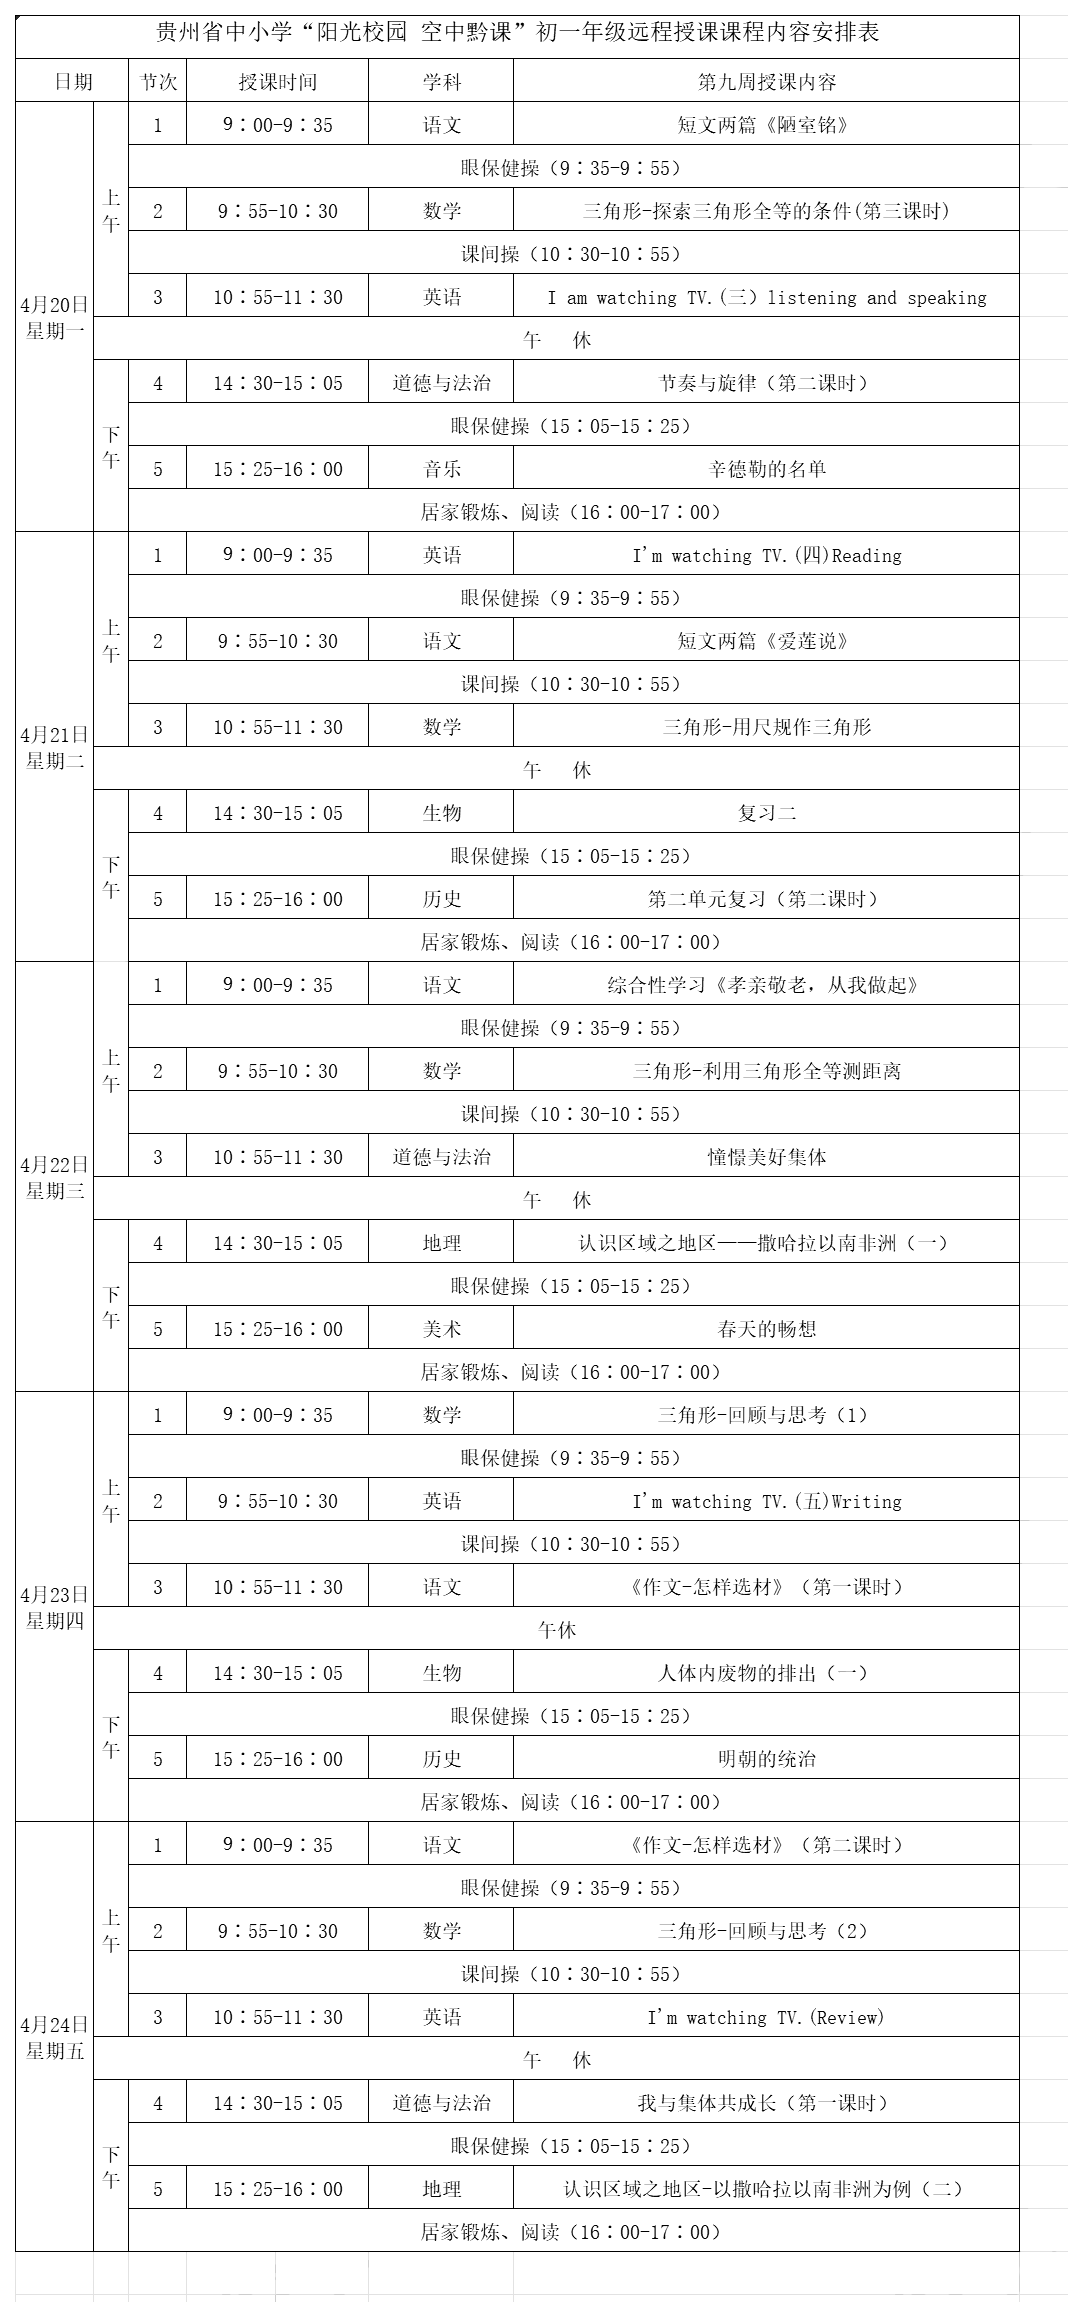 贵州中小学“空中课堂”课程表完整版公布（4月20日1